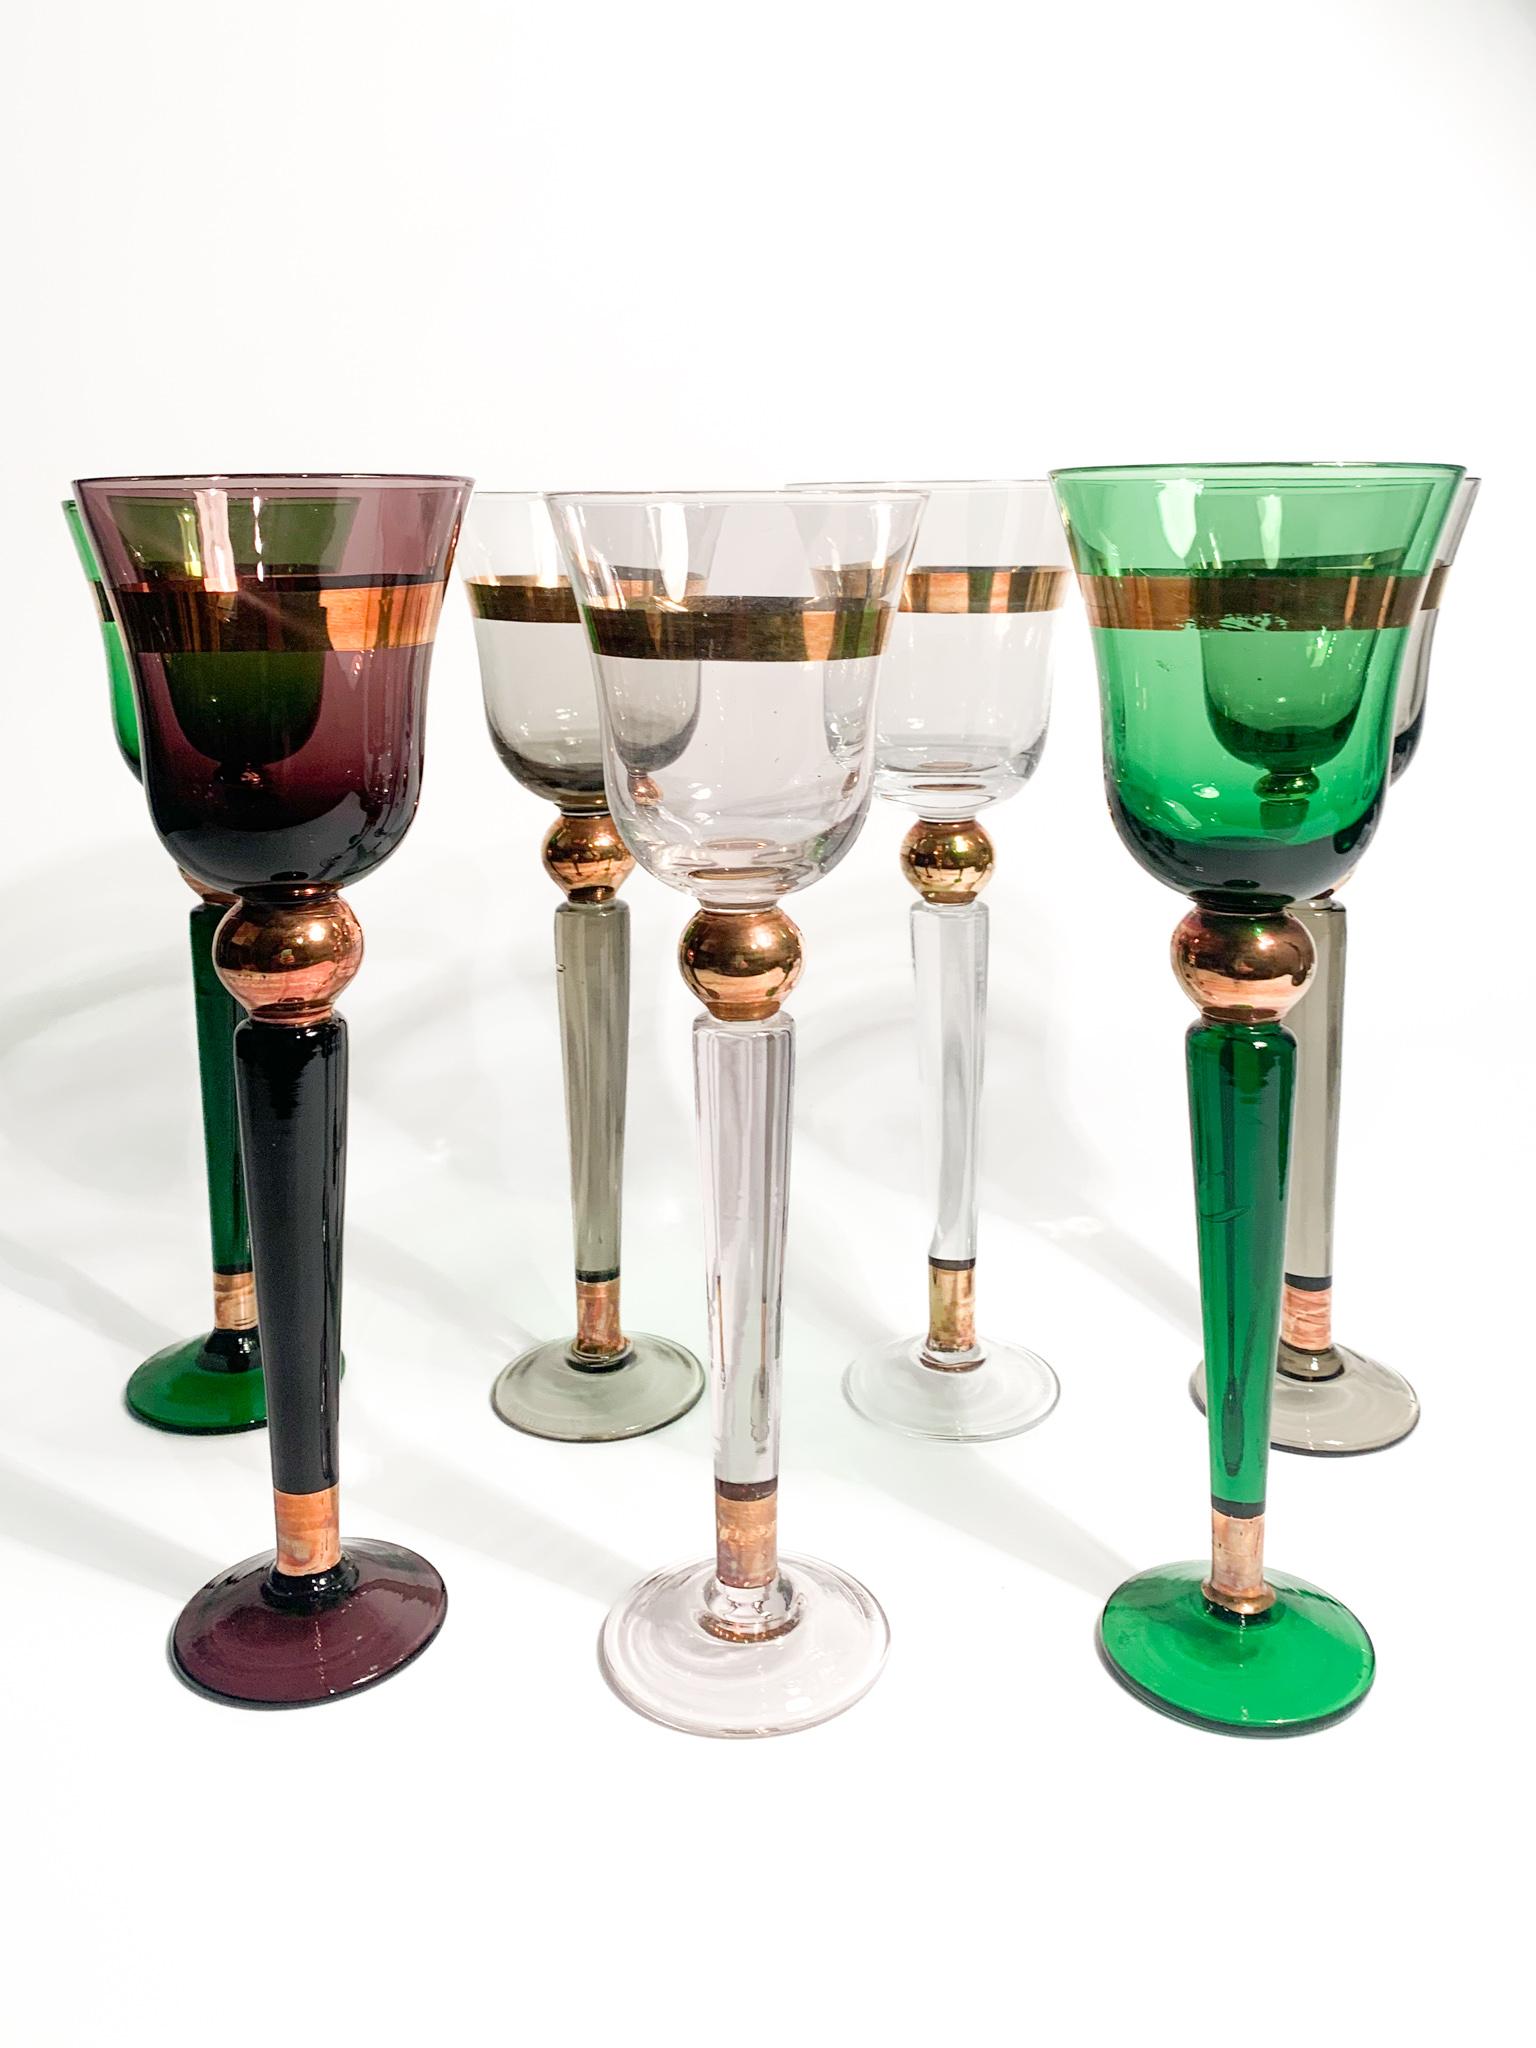 Satz von sechs Gläsern (plus 1) aus mehrfarbigem Murano-Glas, hergestellt von Venini in den 1950er Jahren. Jedes Glas ist am Boden signiert.

Ø 7 cm h 21,5 cm